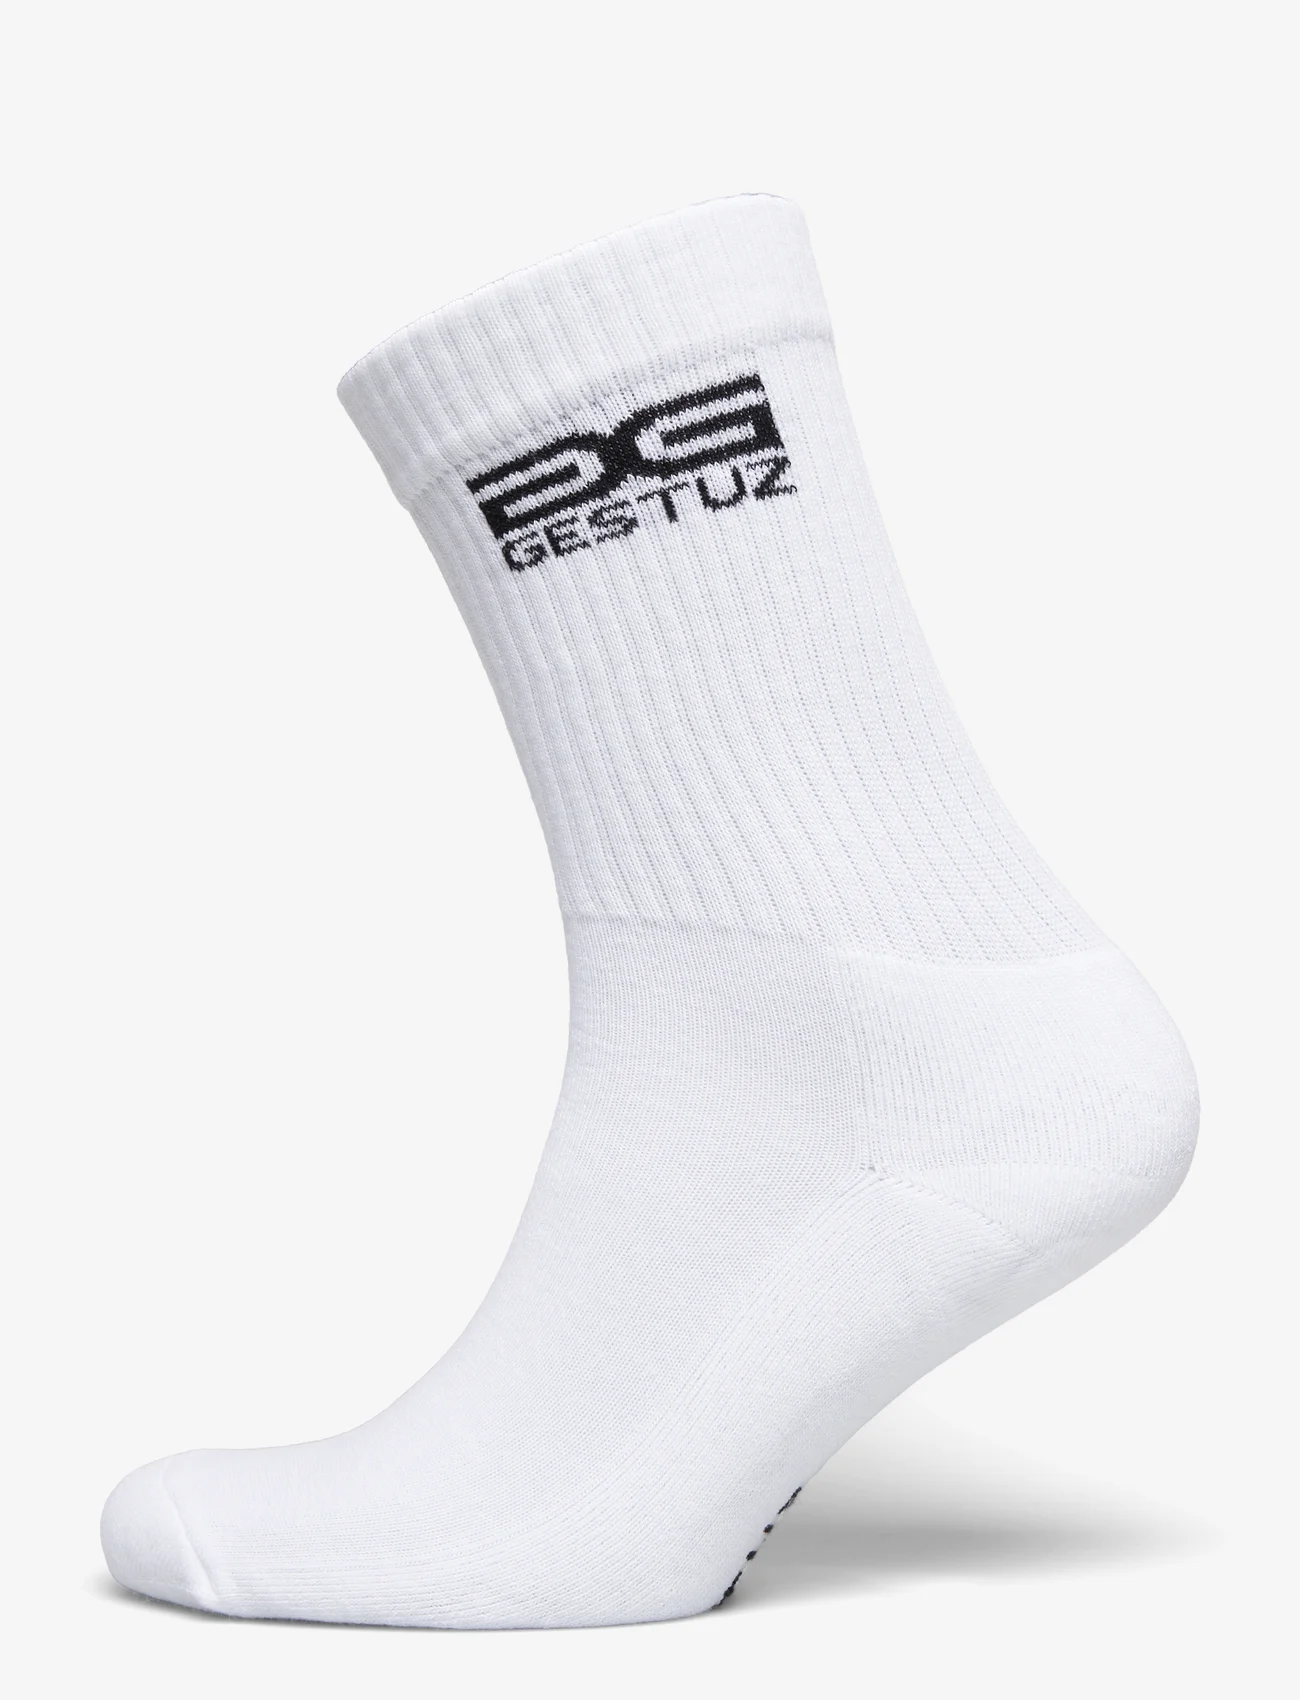 Gestuz - GestuzGZ new logo socks - lowest prices - bright white - 0